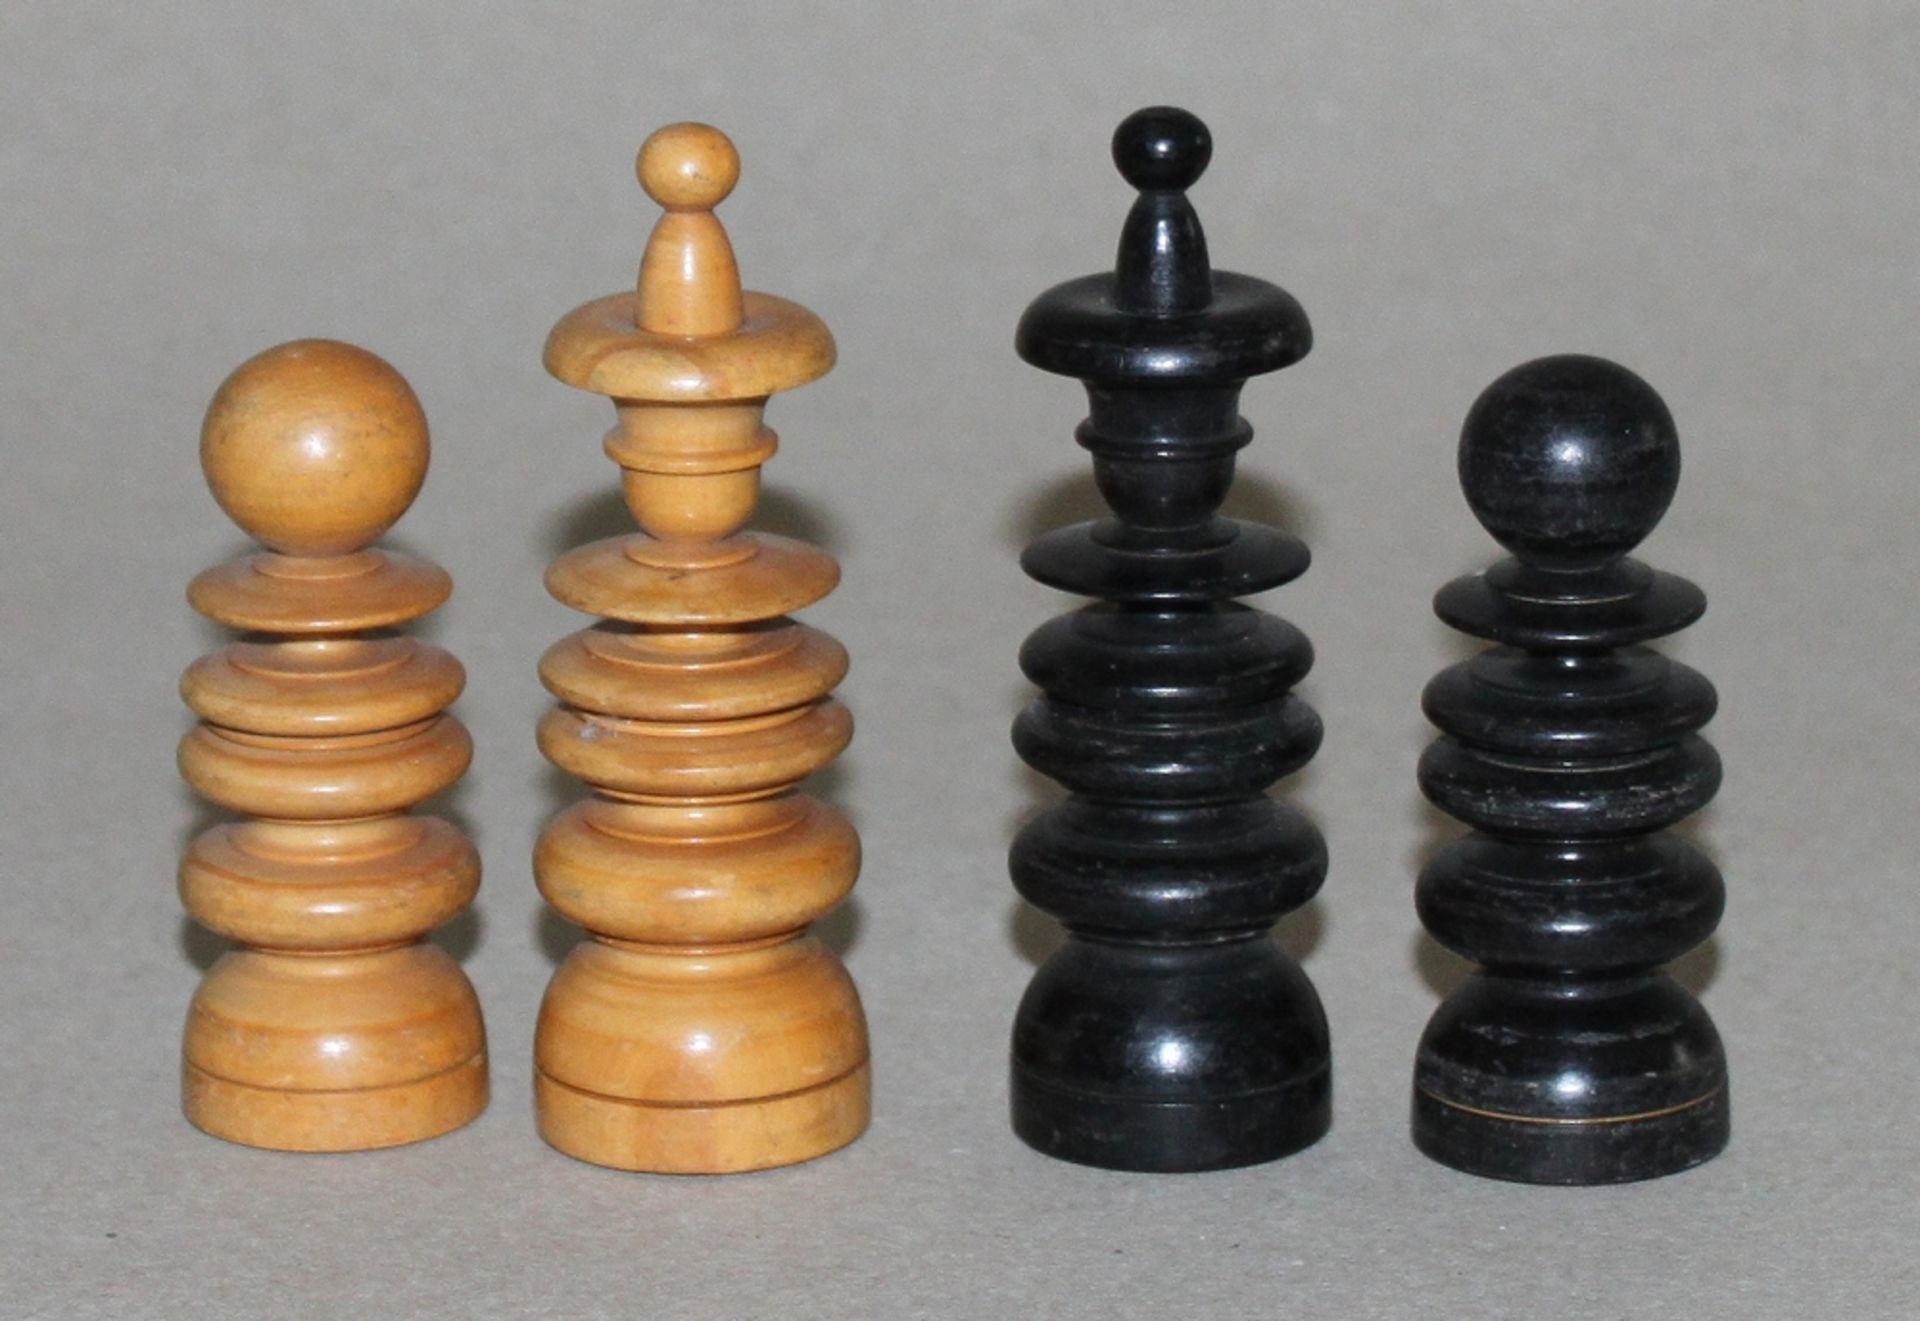 Europa. England. Schachfiguren aus Holz in Anlehnung an den St. George - Stil. Eine Partei in